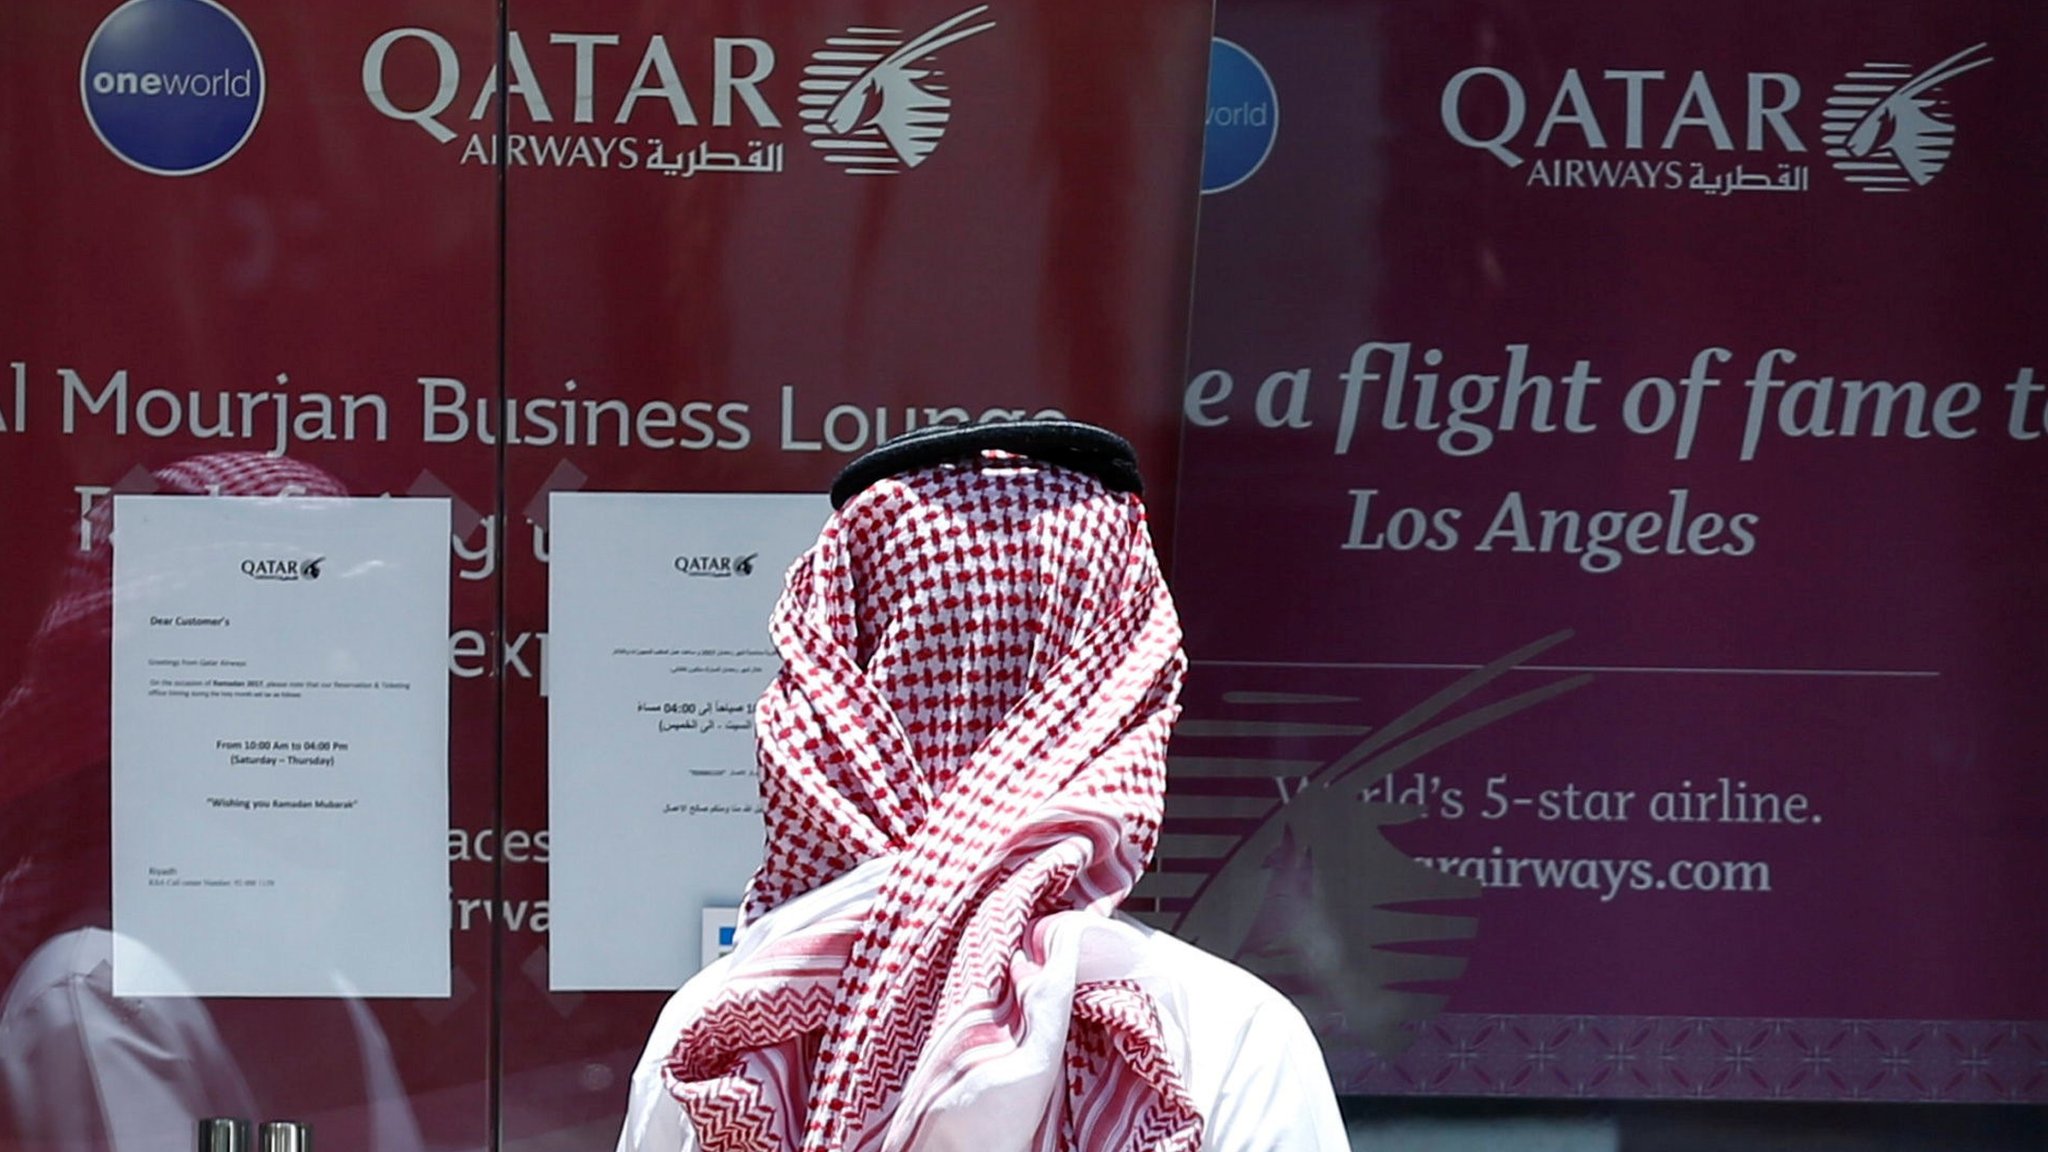 Qatar airways chat support